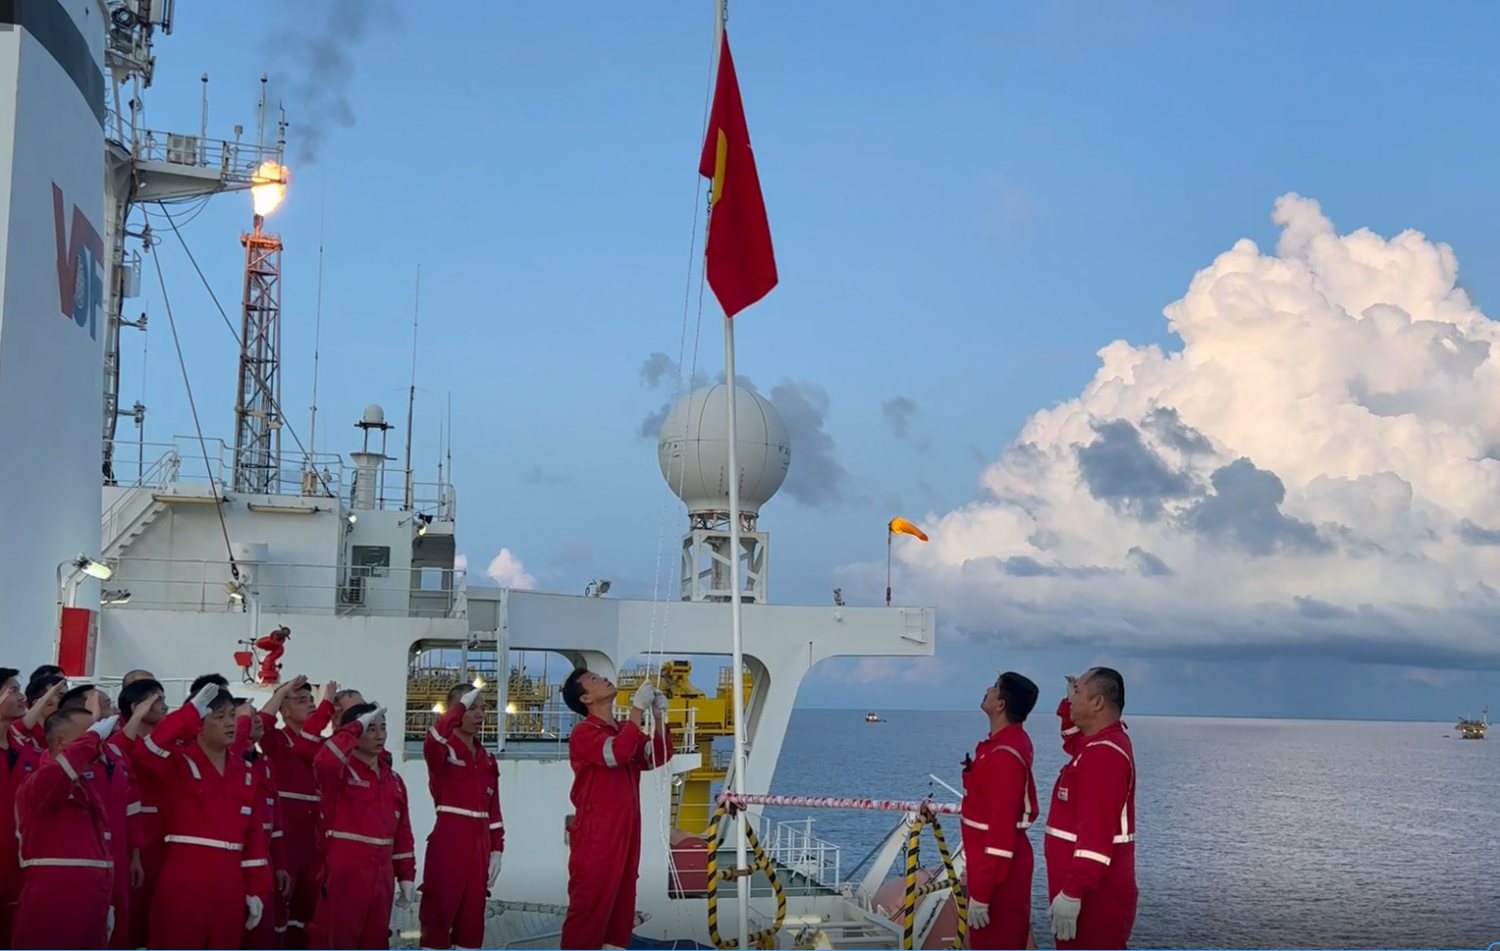 PPS tổ chức Lễ chào cờ mừng ngày Quốc khánh 2/9 trên tàu FPSO Ruby II